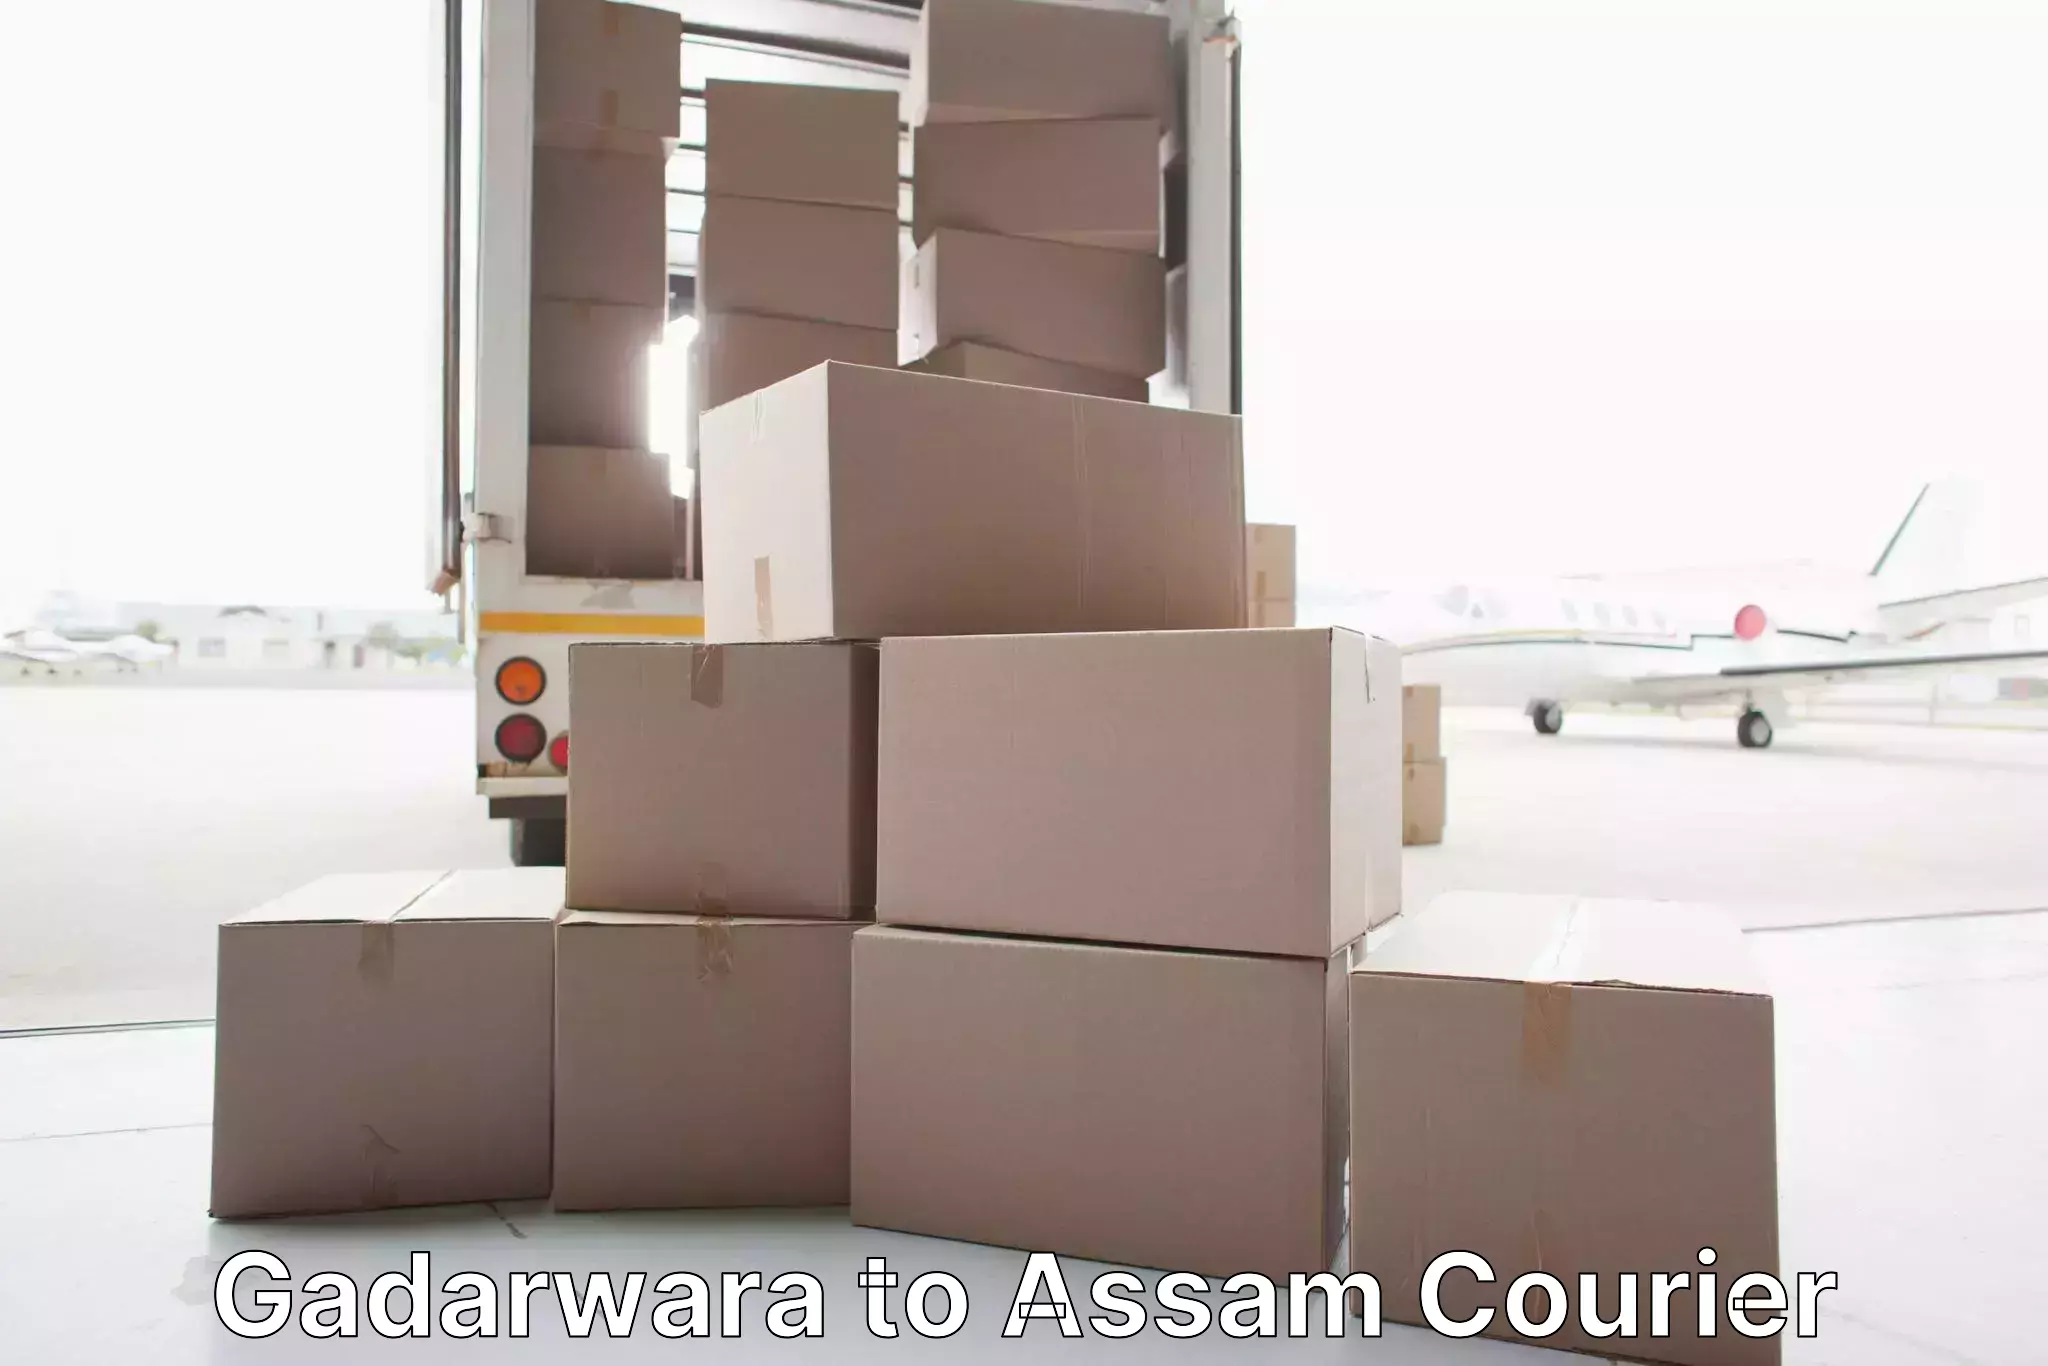 Furniture moving experts Gadarwara to Duliajan